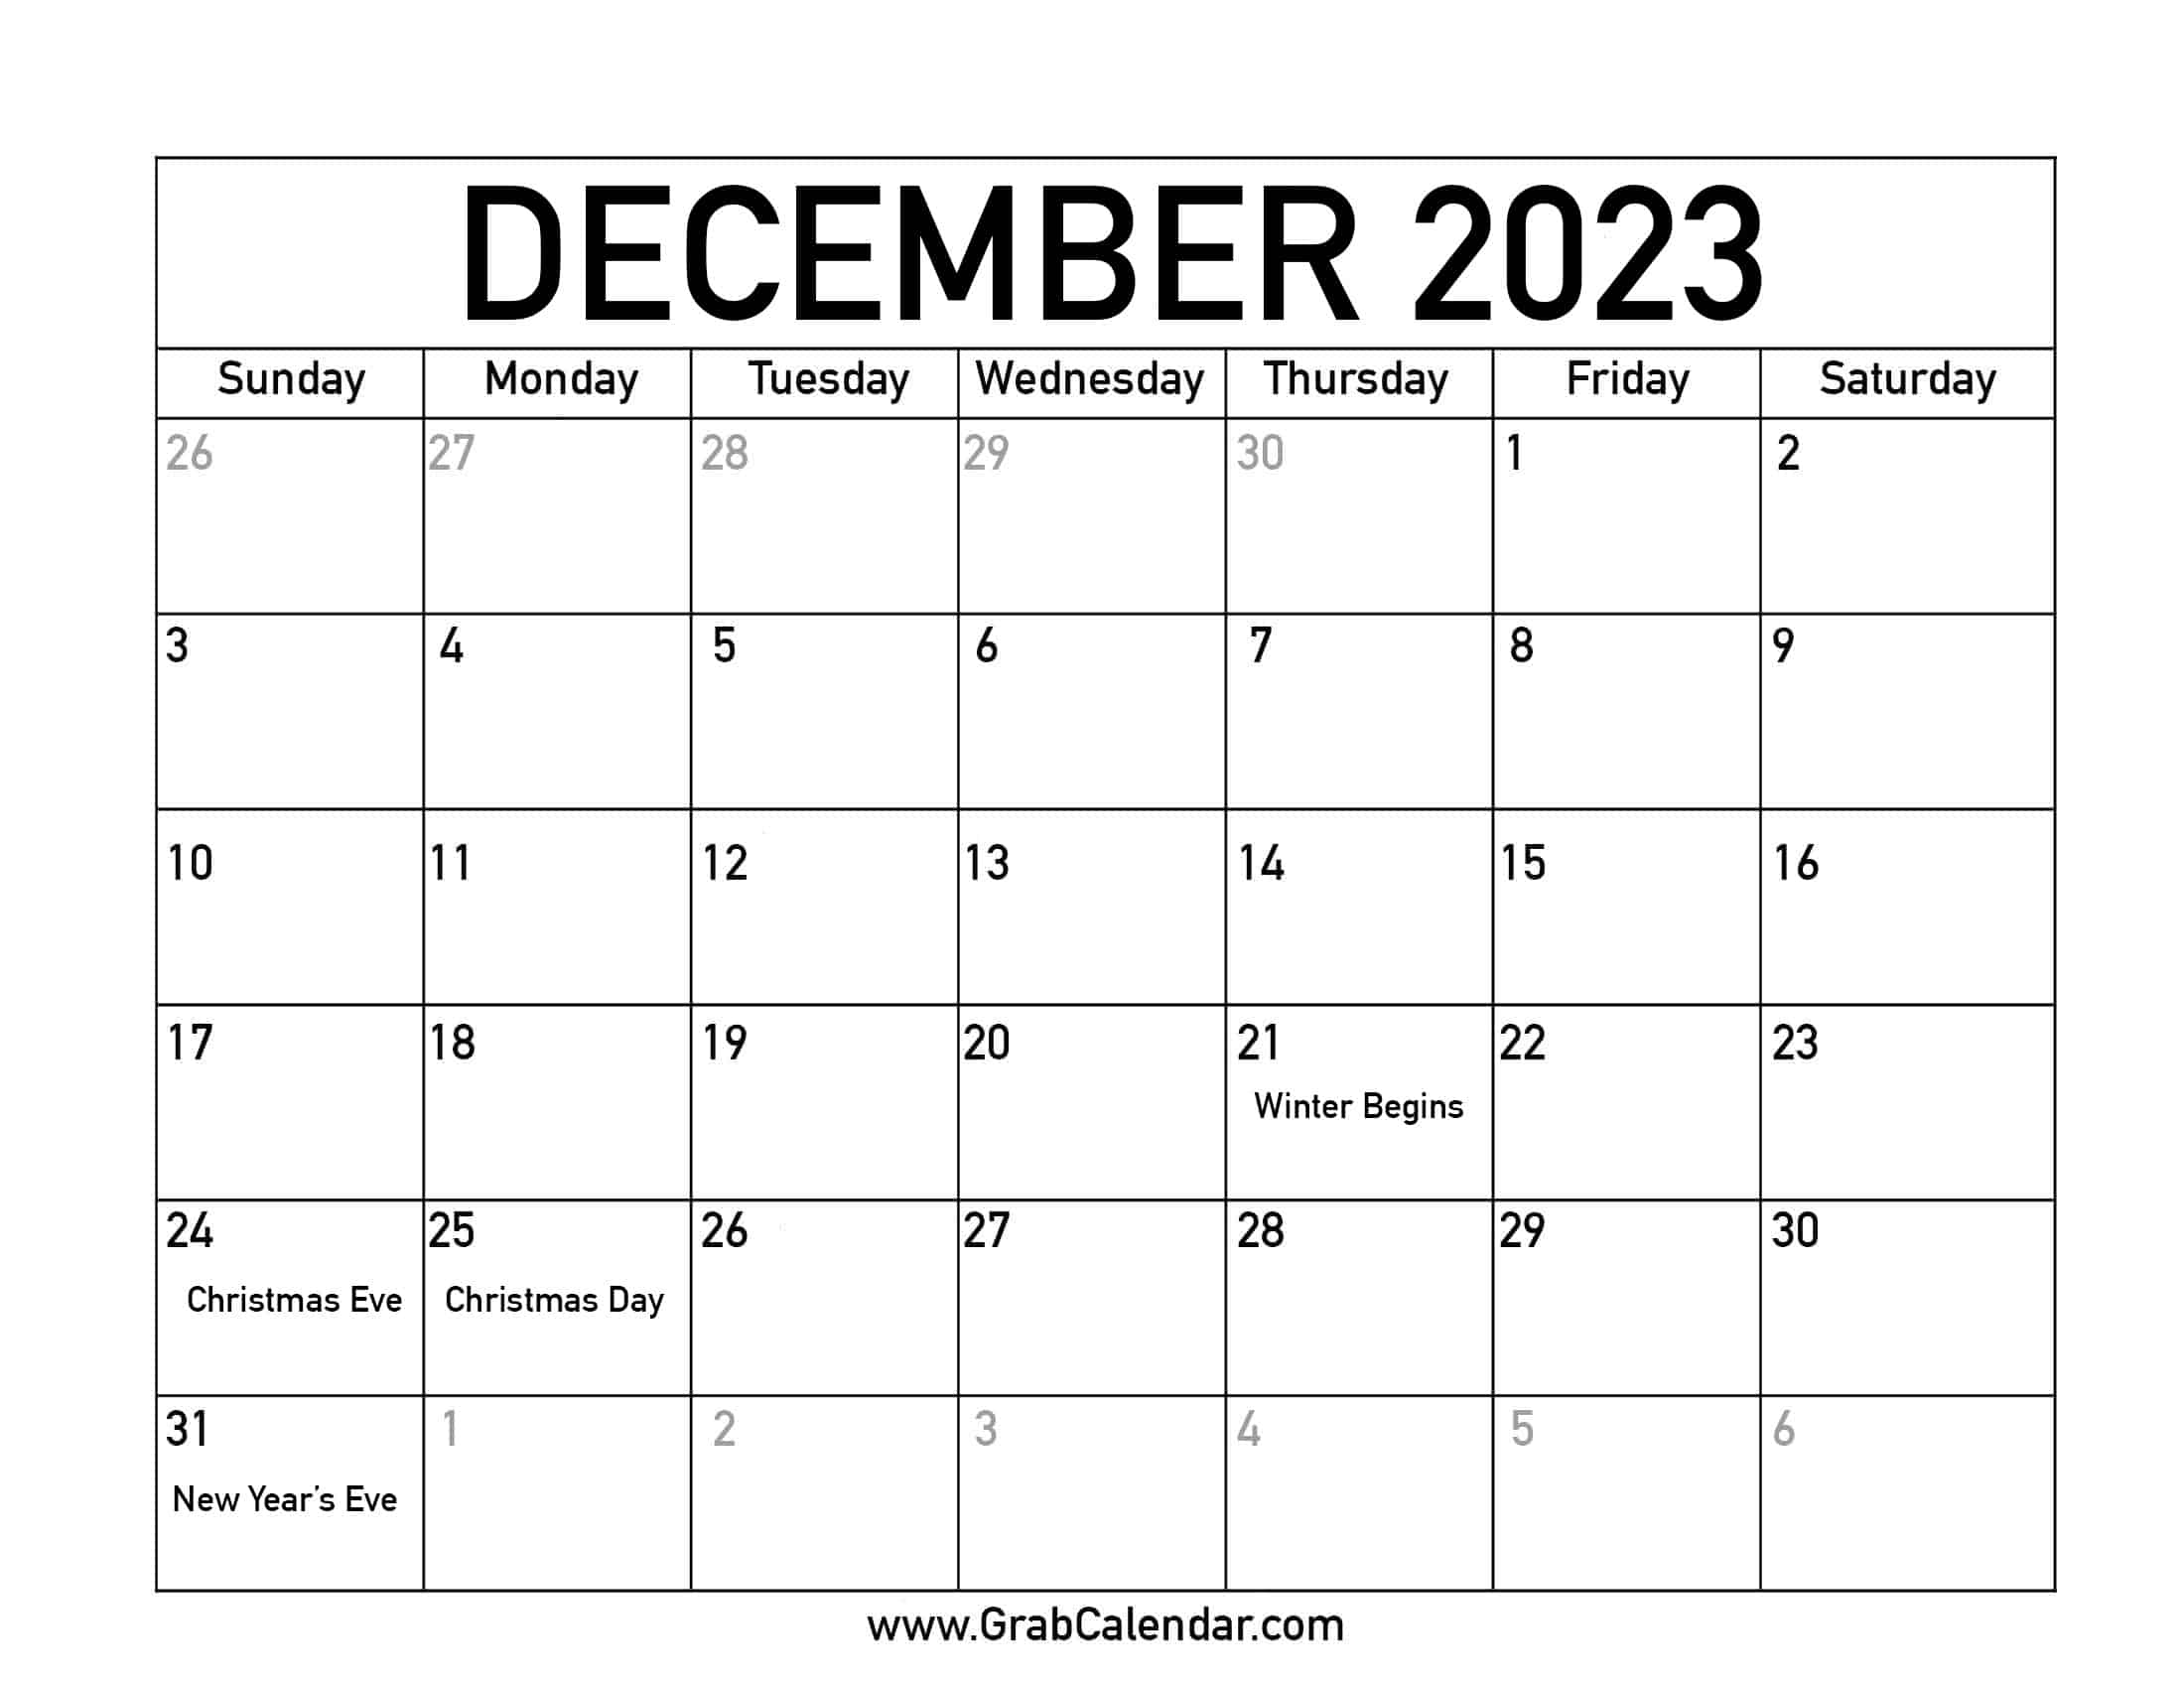 December 2023 Calendar Of Holidays Get Latest Map Update